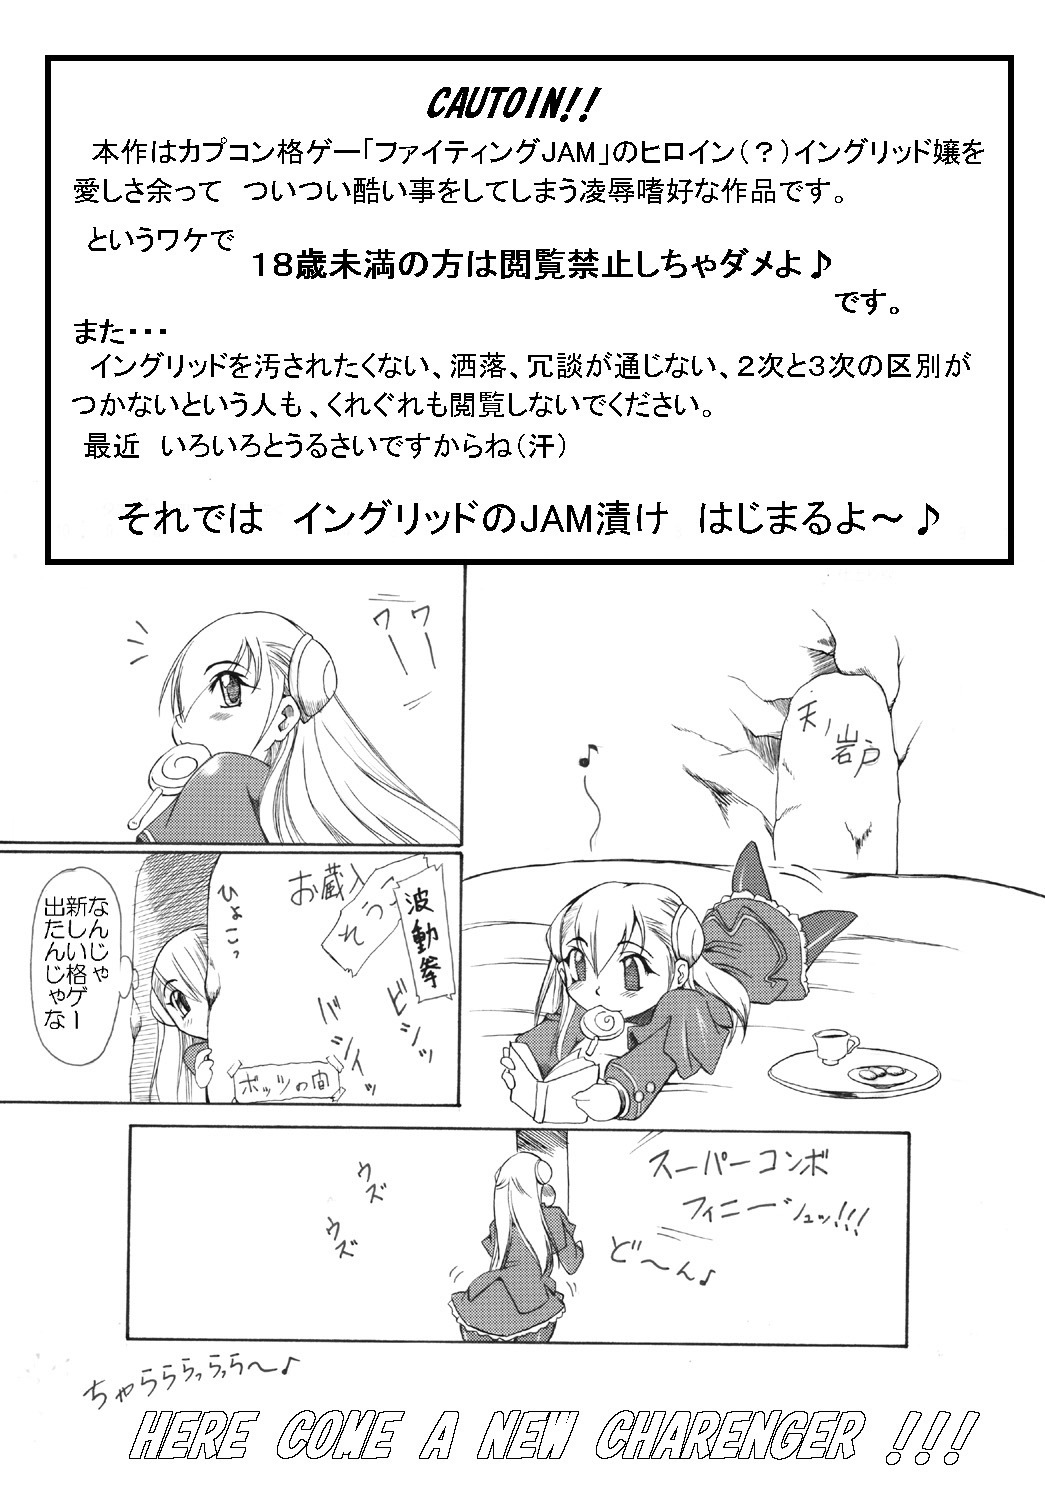 [Furuya (TAKE)] Ingrid no JAM Tsuke (Capcom Fighting Jam) page 2 full